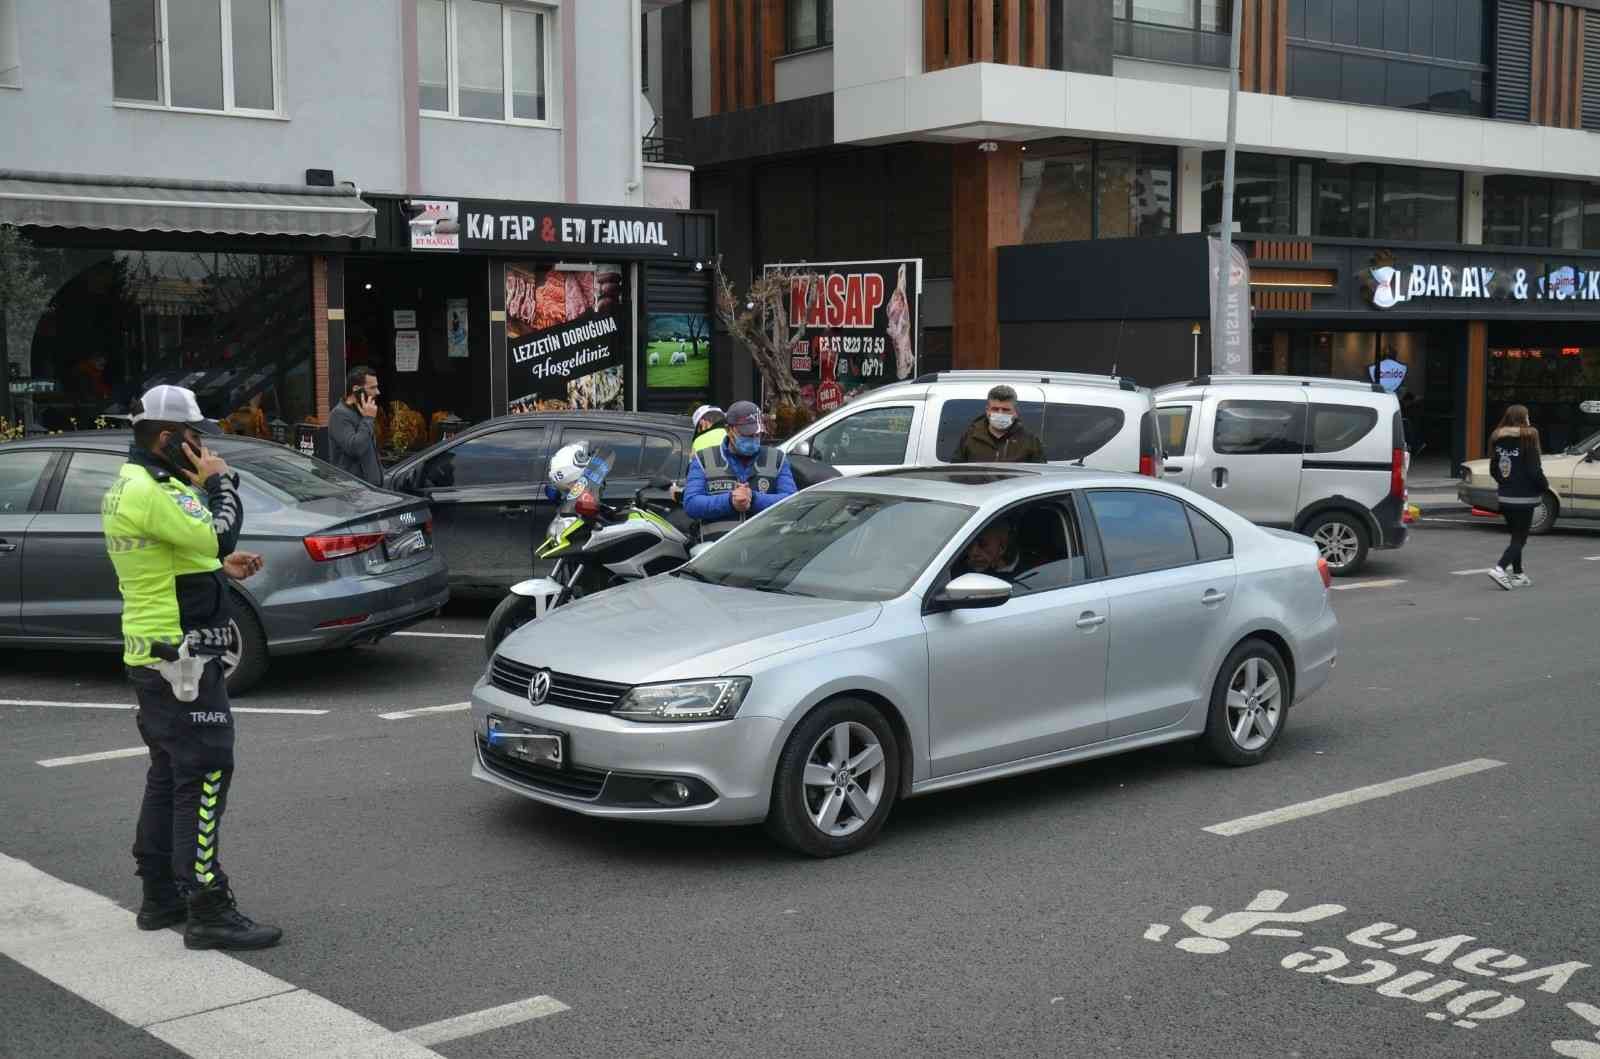 Uşak’ta bin 183 araç sürücüsüne para cezası kesildi #usak